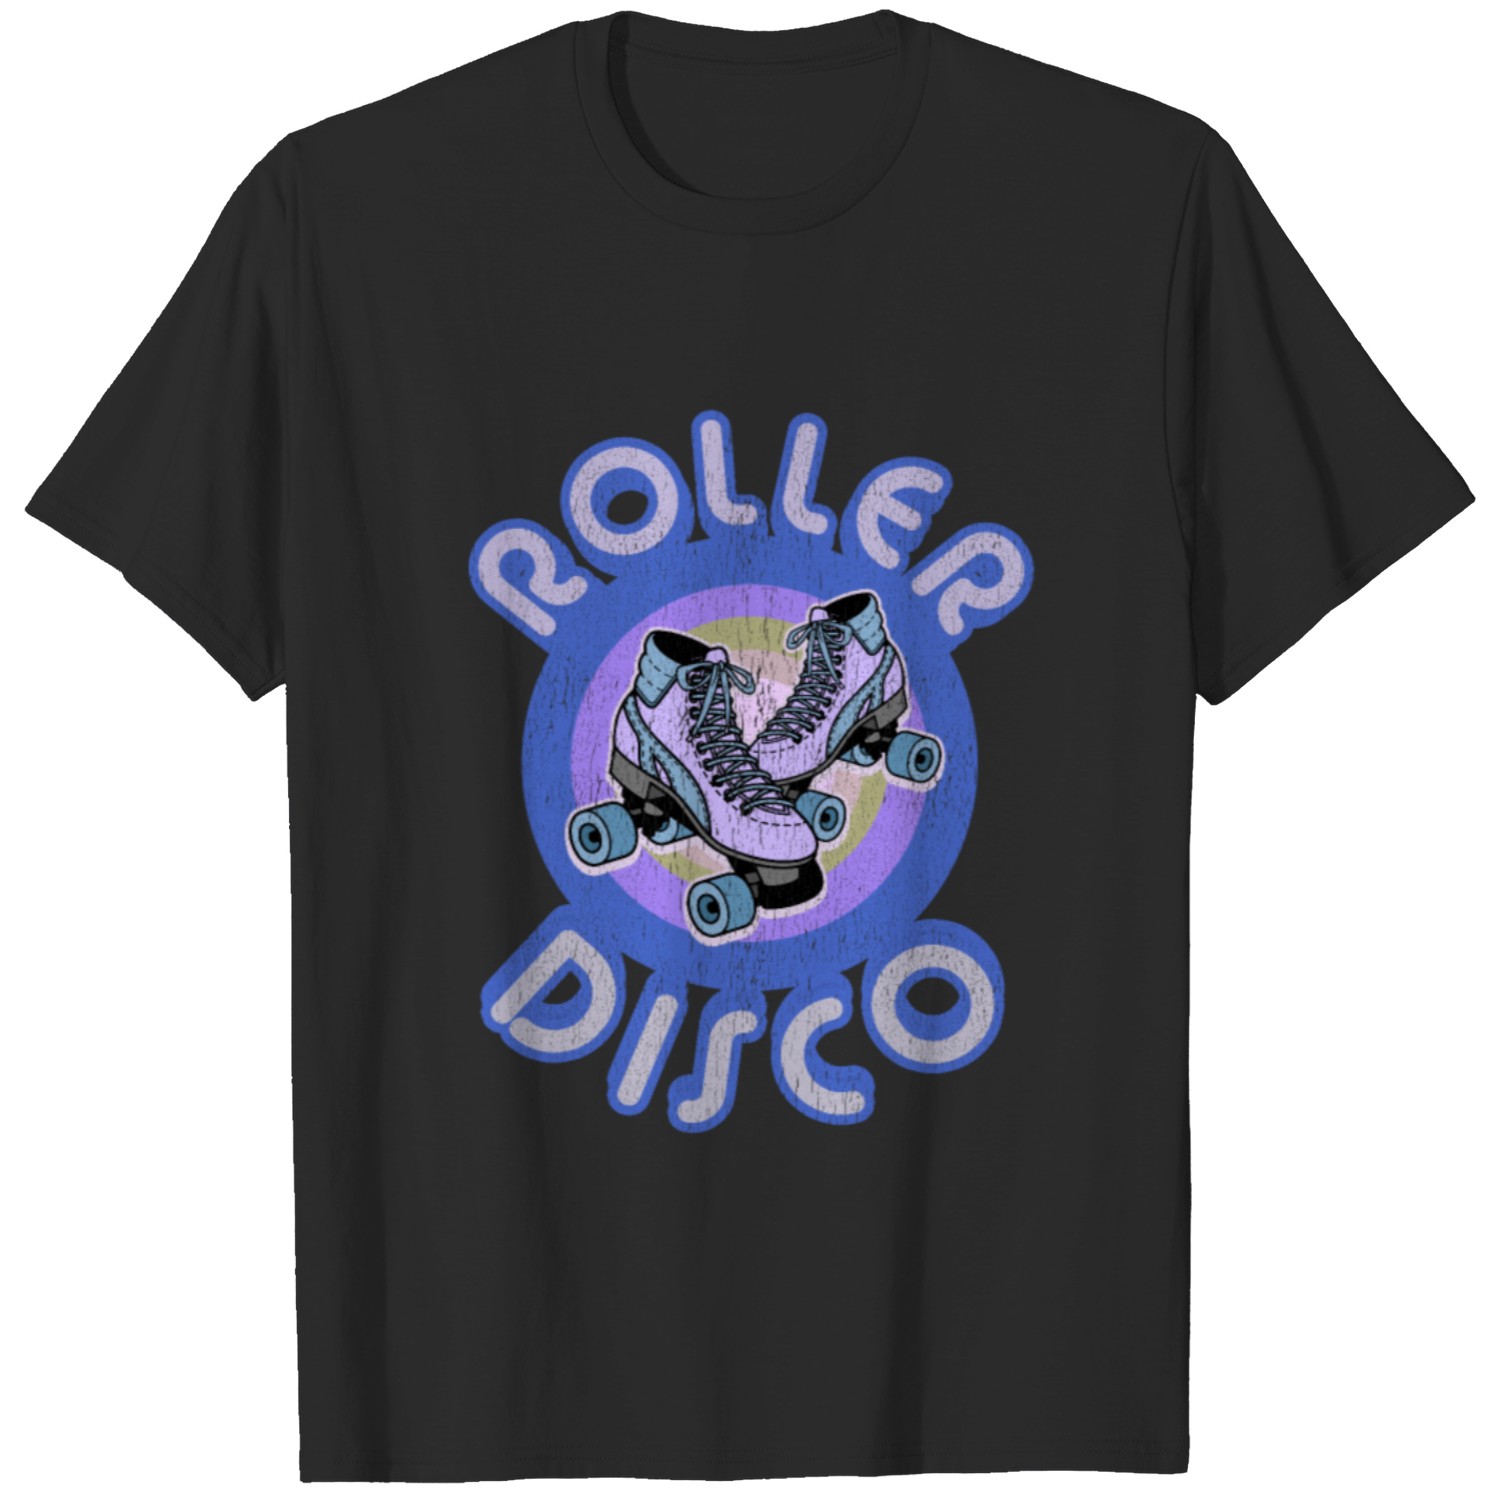 Roller Disco Derby Vintage & Distressed design T-shirt